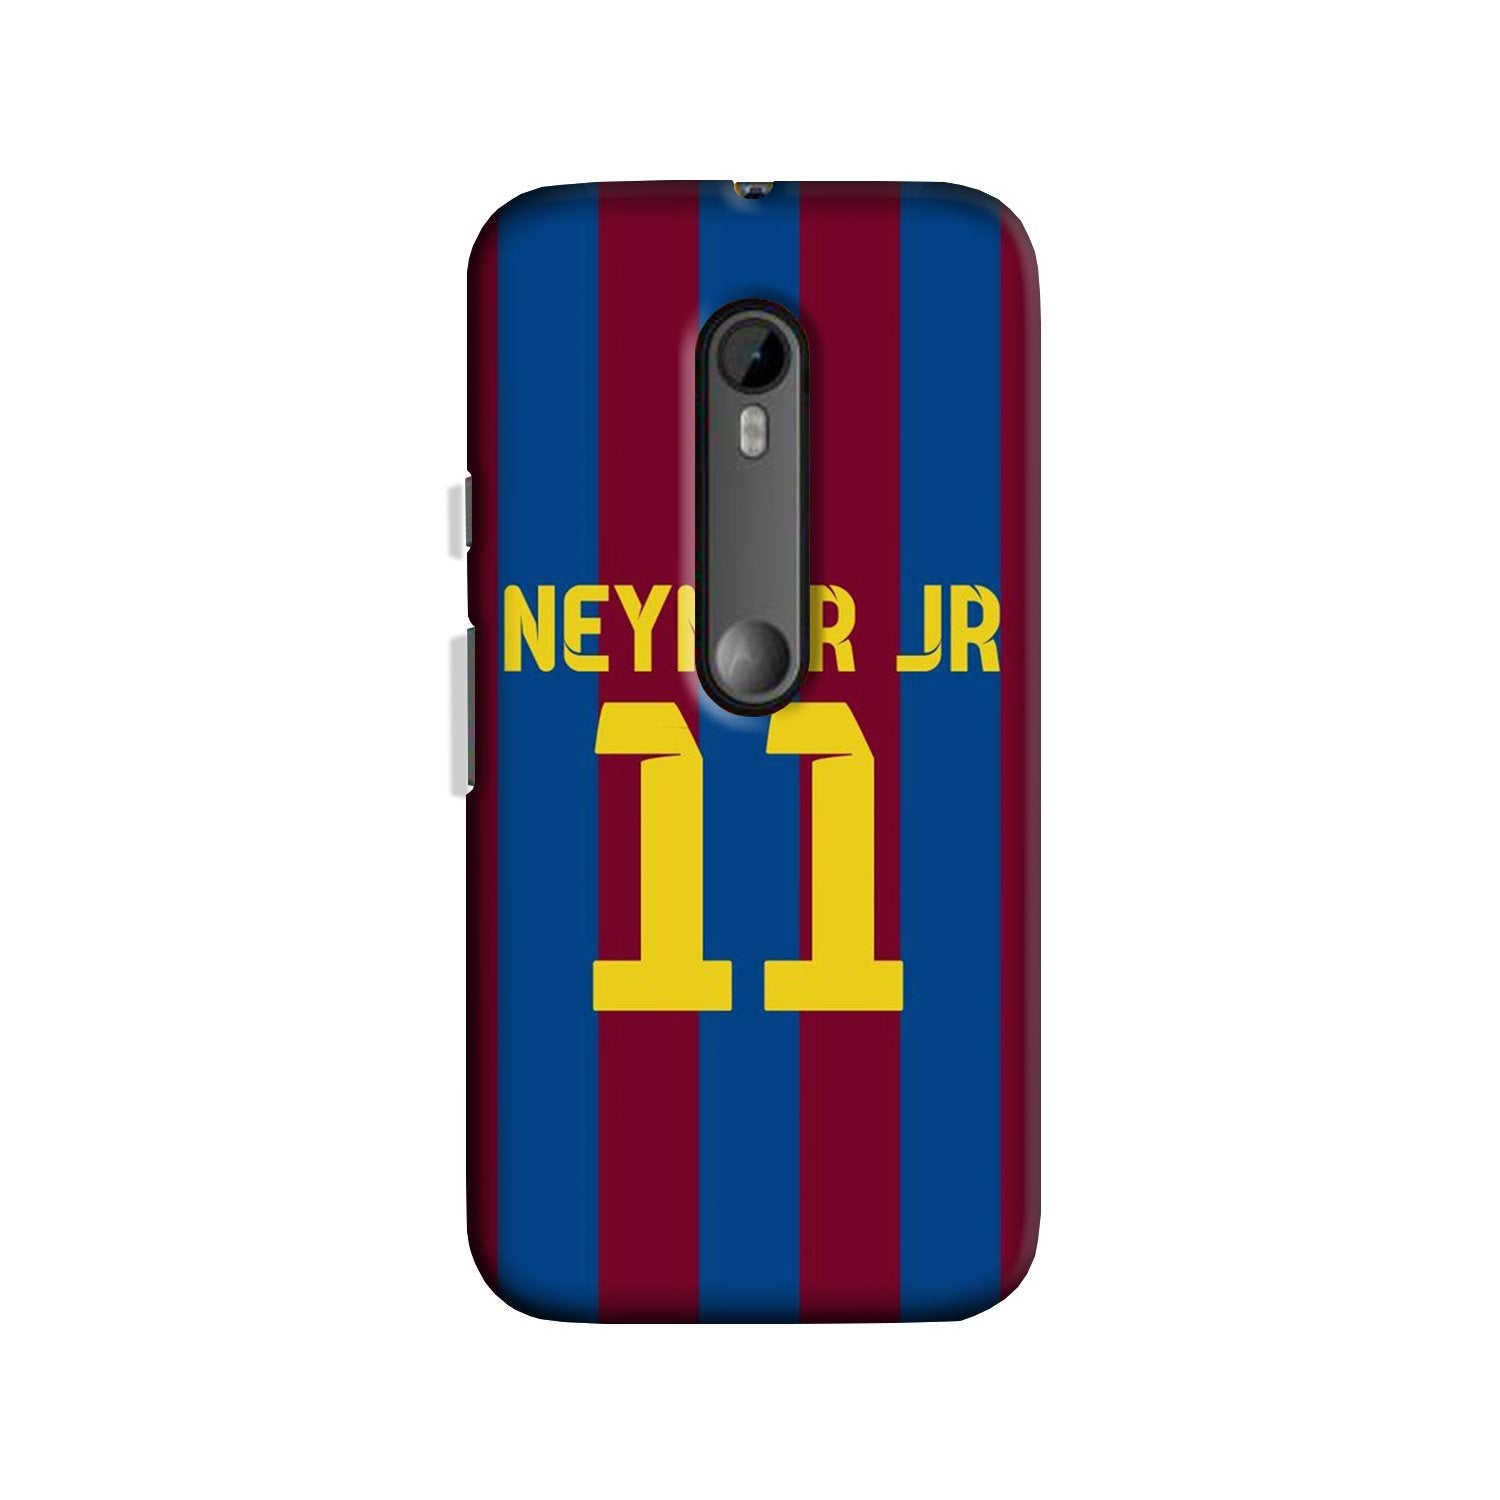 Neymar Jr Case for Moto X Play  (Design - 162)